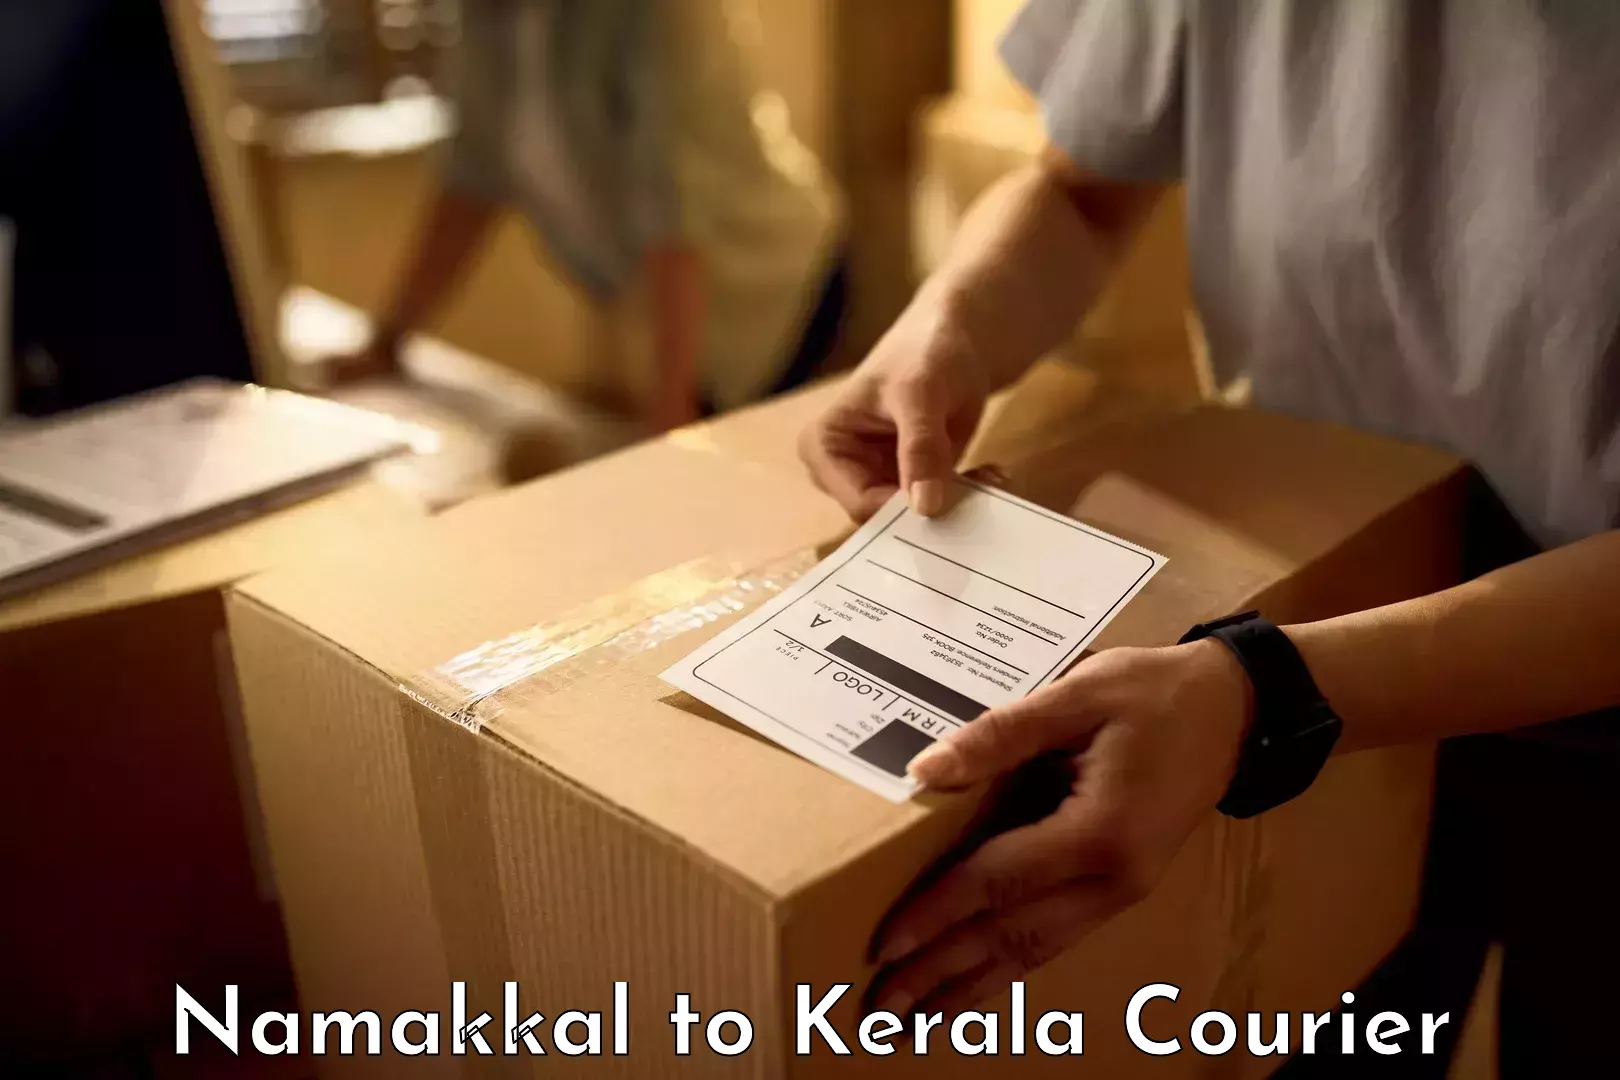 Baggage transport scheduler Namakkal to Kerala